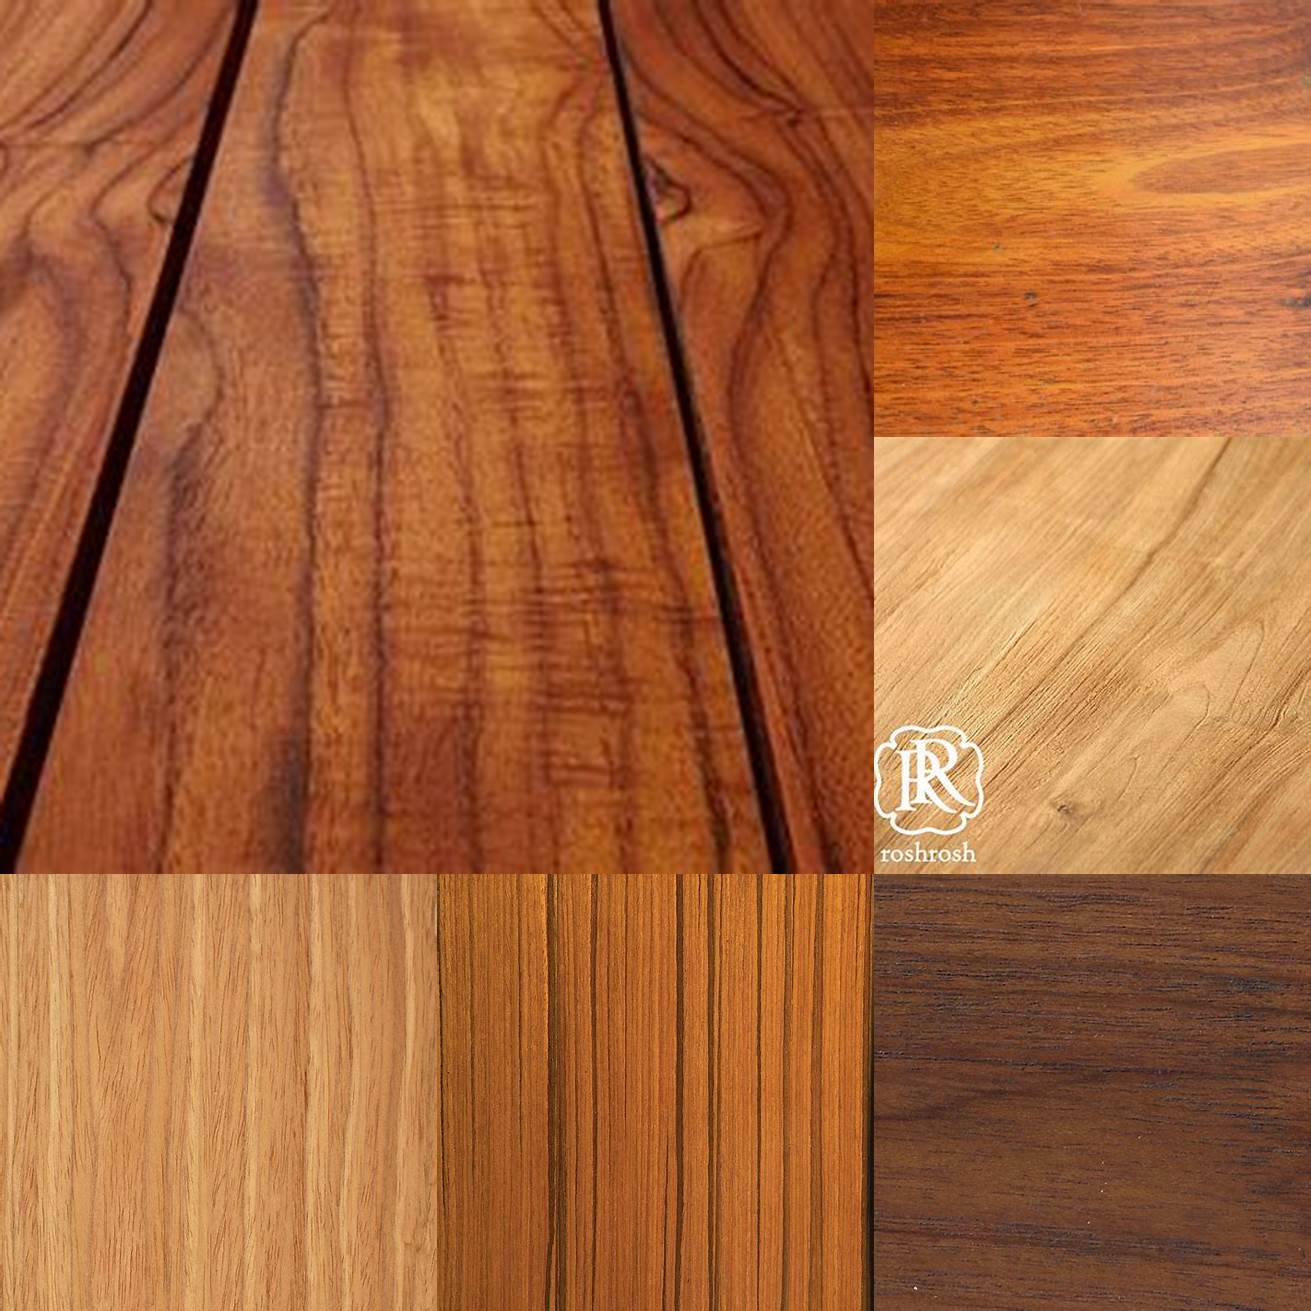 Detail shot of the teak wood grain